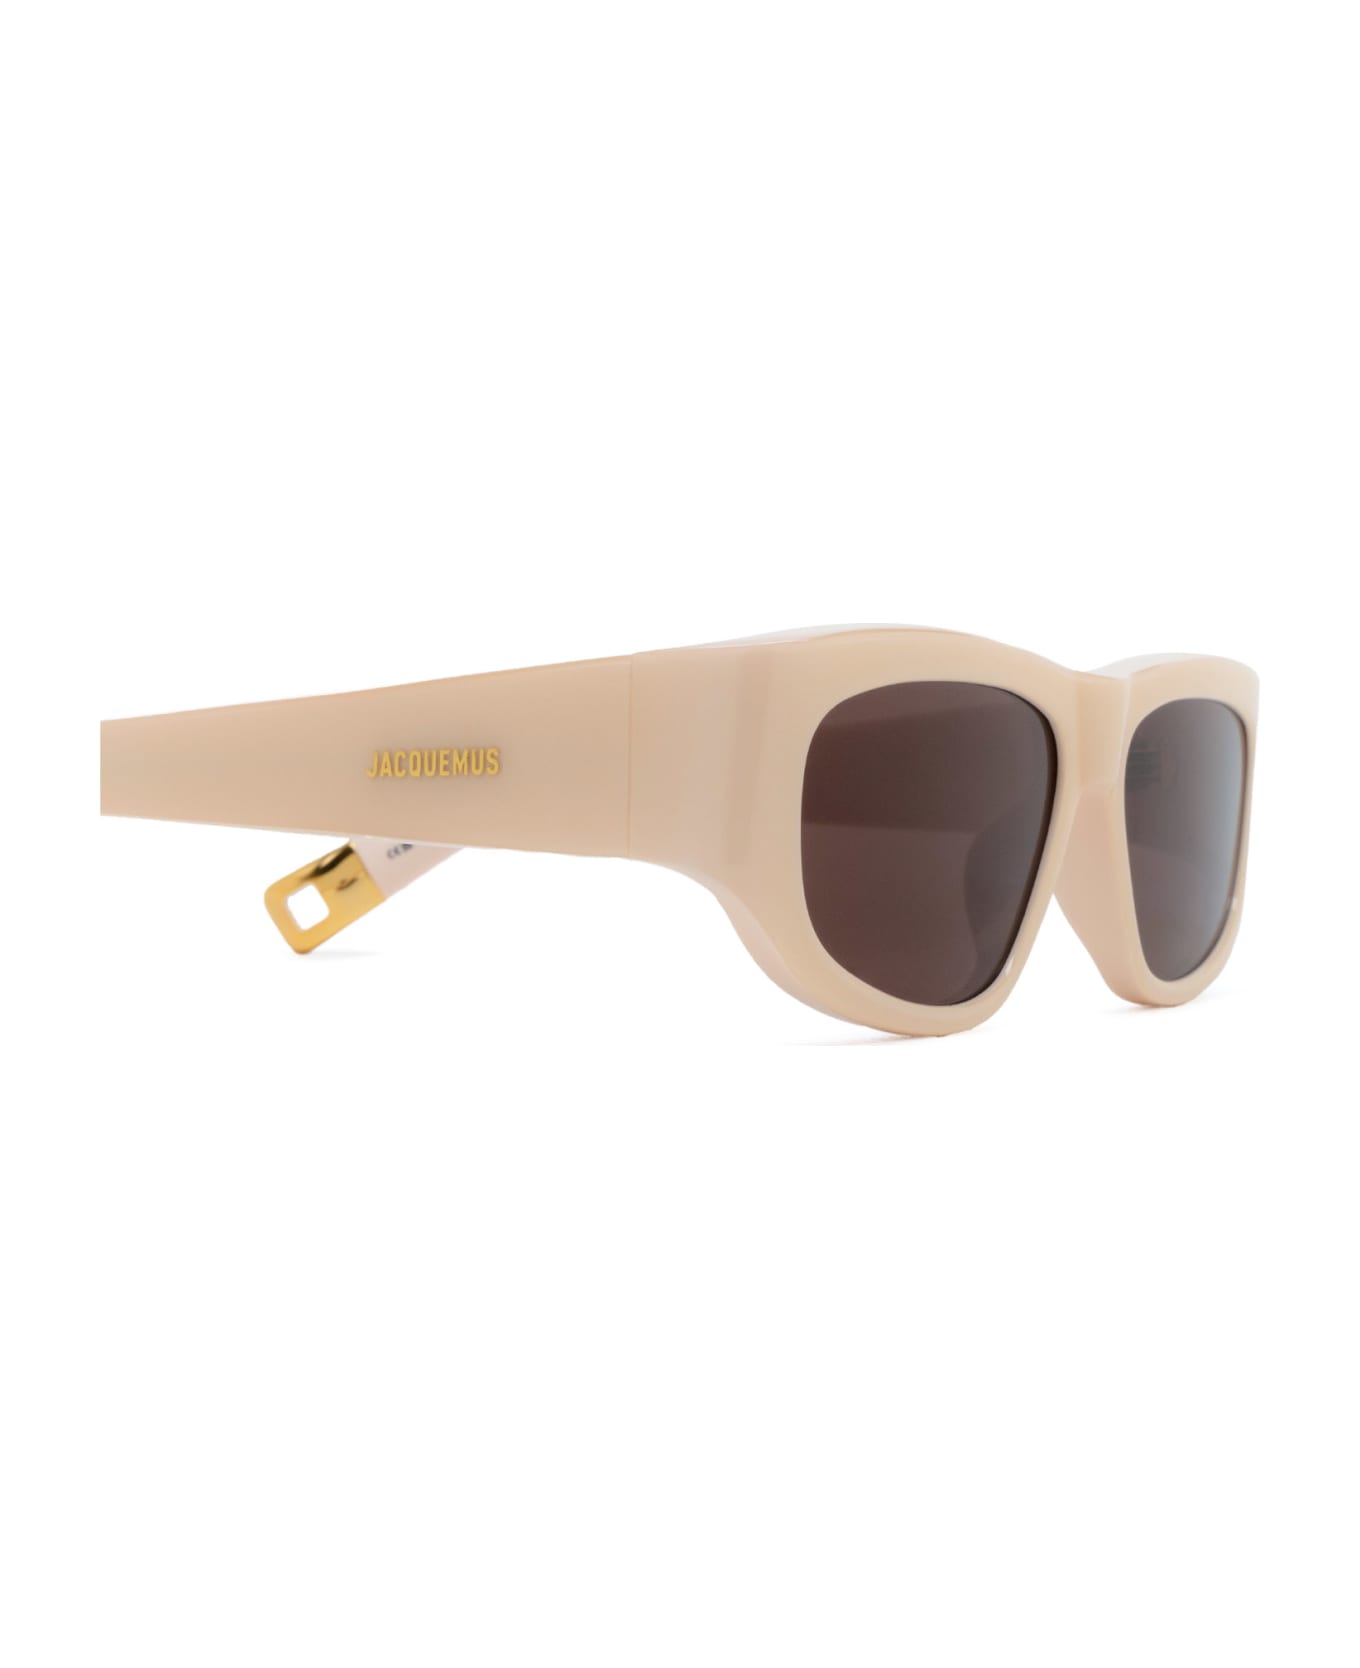 Jacquemus Jac2 Cream Sunglasses - Cream